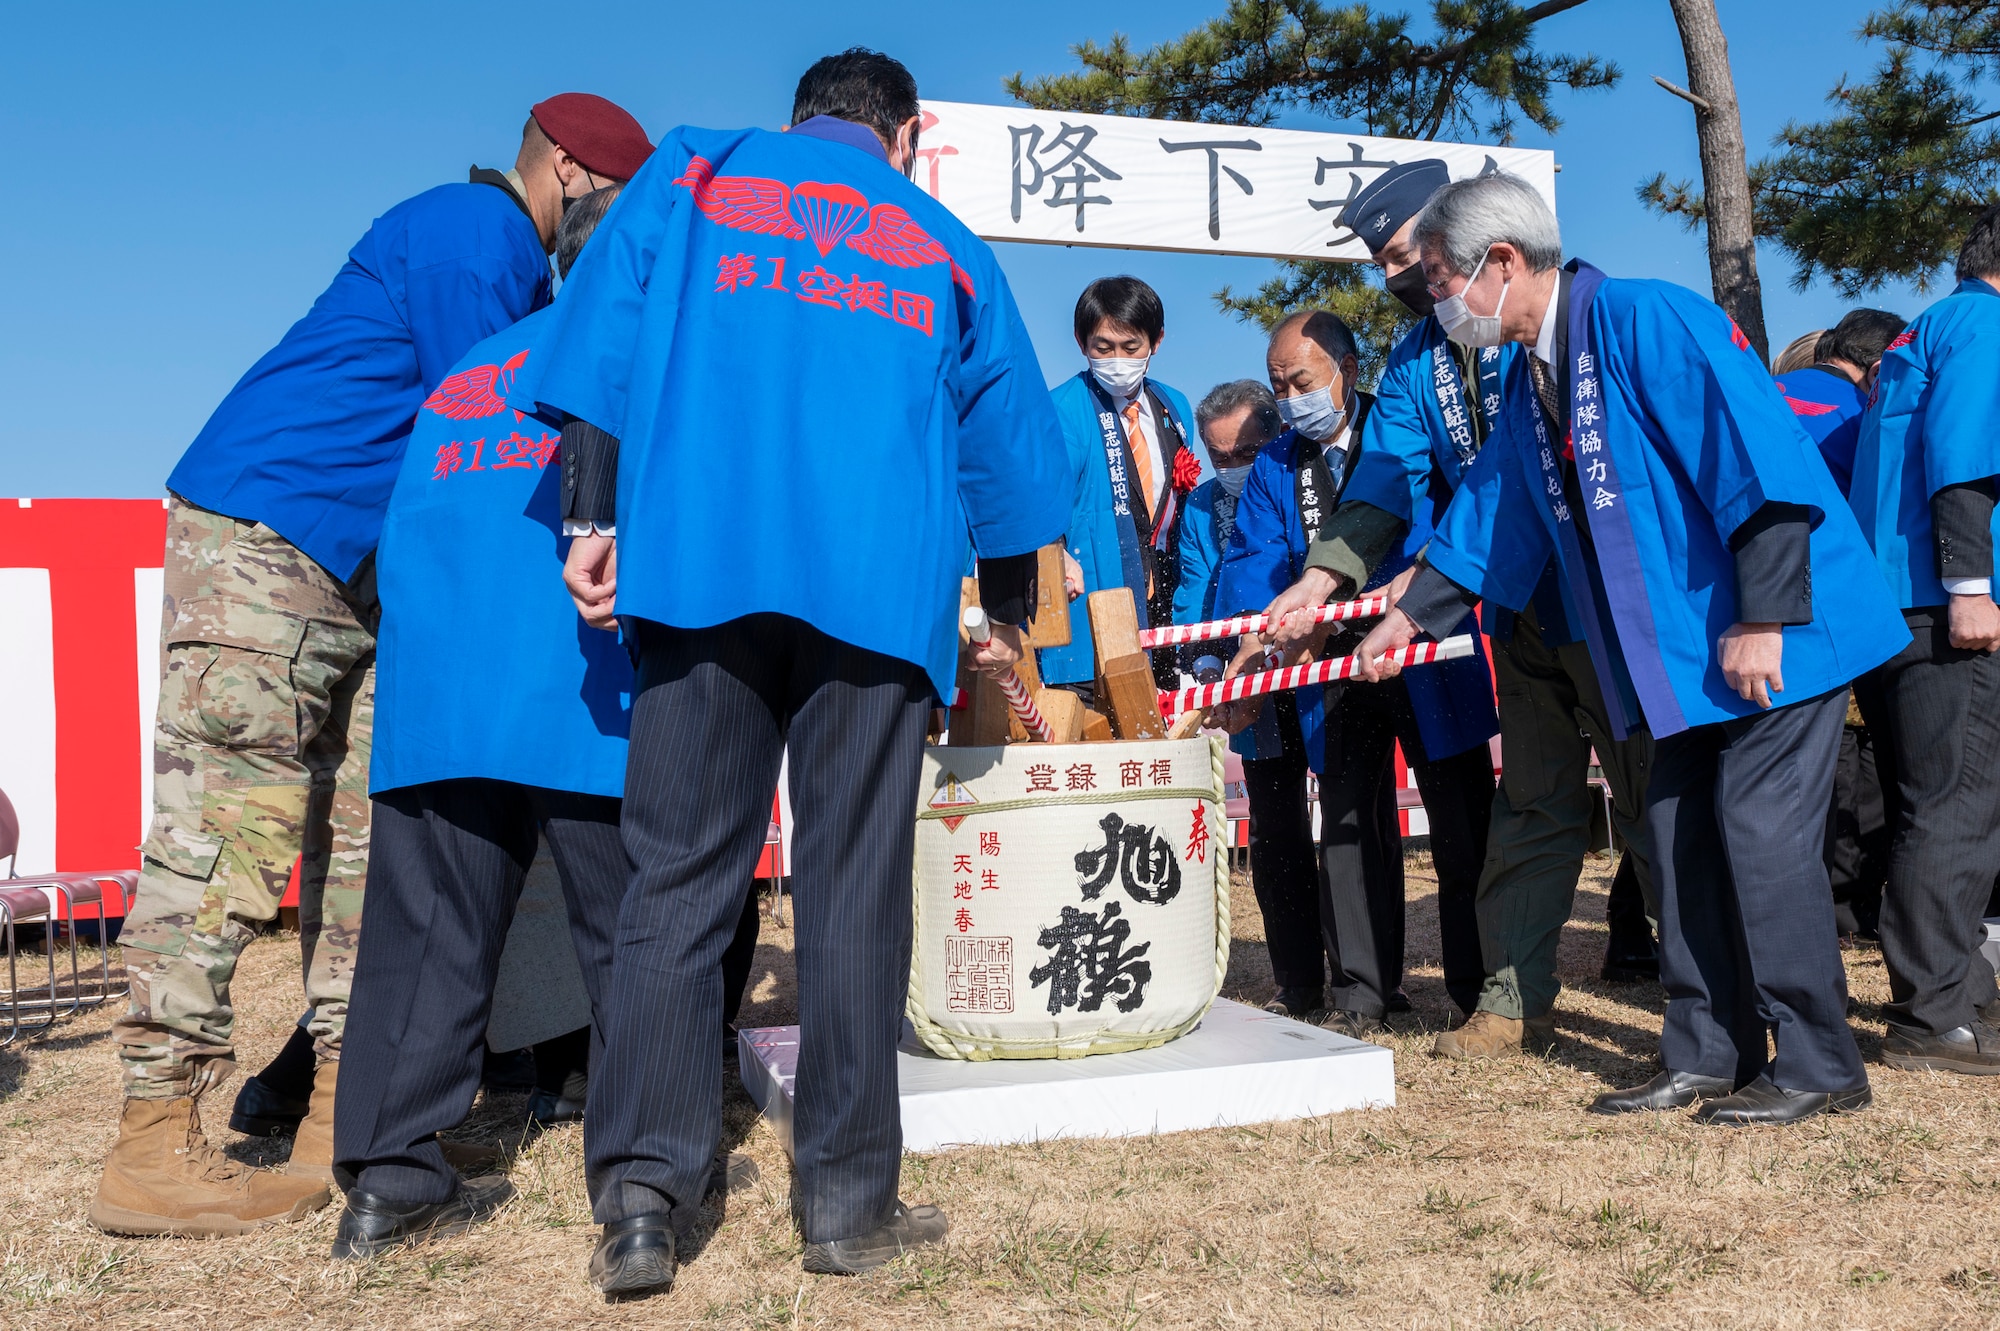 A dozen people holding wooden mallets break open a sake barrel